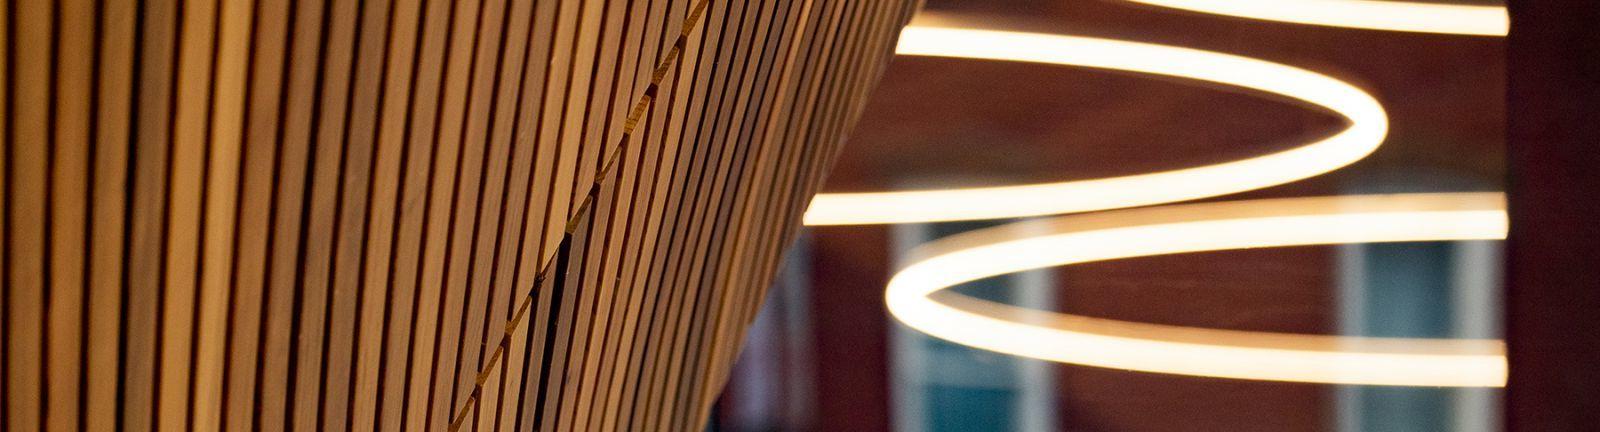 坦普尔查尔斯图书馆的灯光和木材元素摘要.